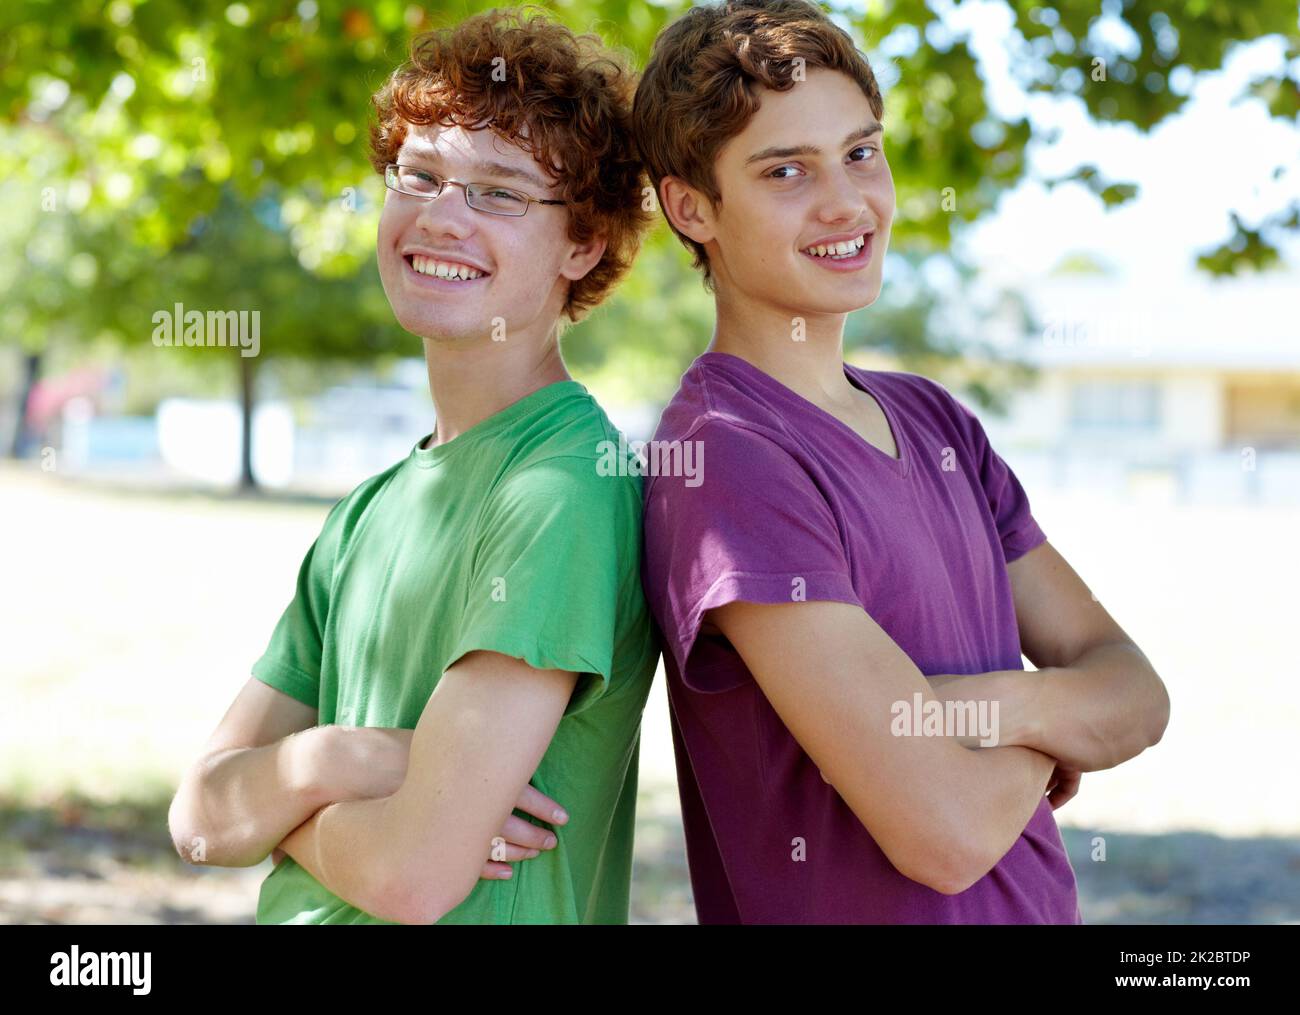 Wir haben uns gegenseitig unterstützt. Portrait von zwei Jungen, die an einem sonnigen Tag im Freien stehen. Stockfoto